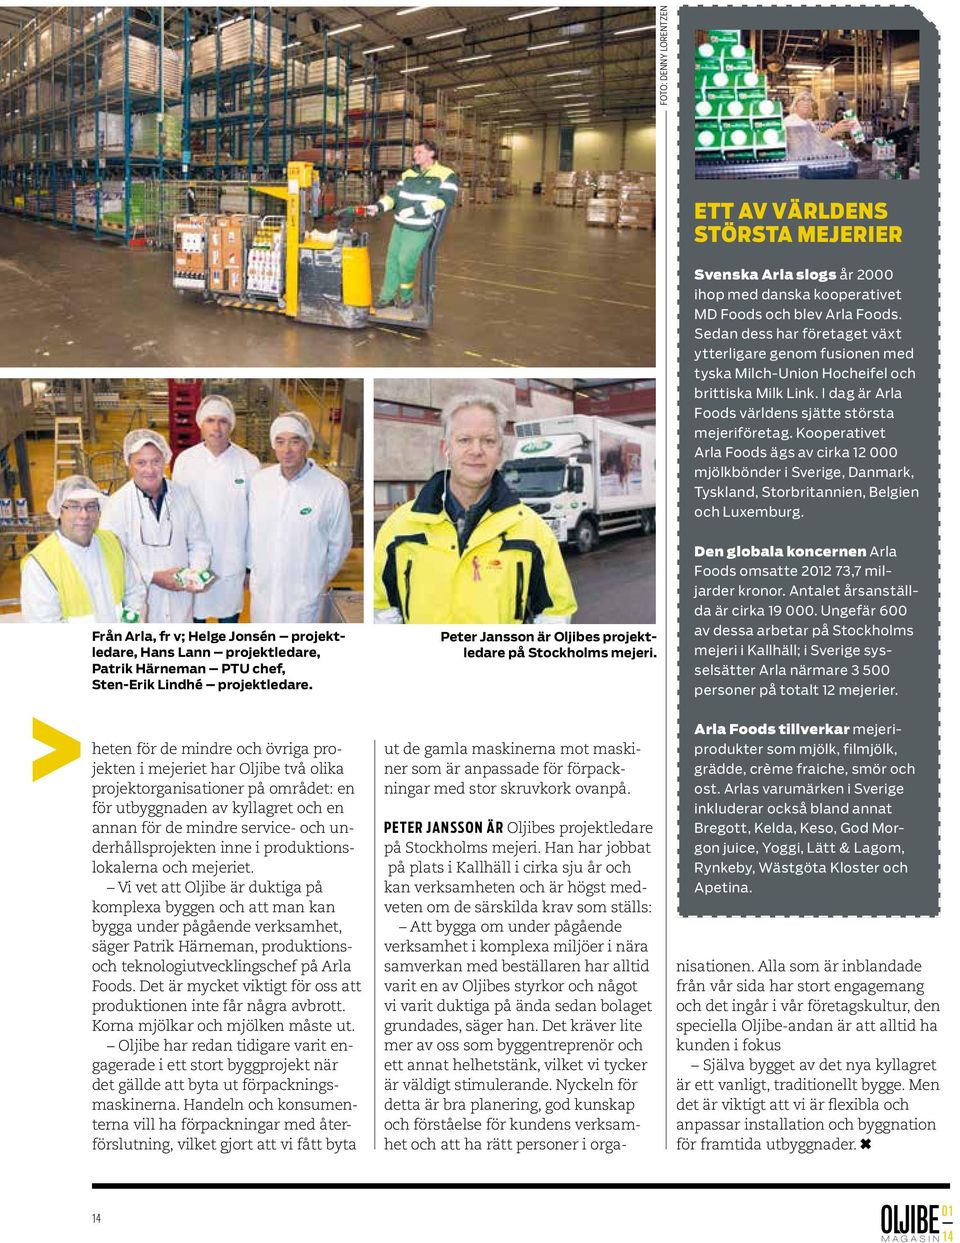 Kooperativet Arla Foods ägs av cirka 12 000 mjölkbönder i Sverige, Danmark, Tyskland, Storbritannien, Belgien och Luxemburg.